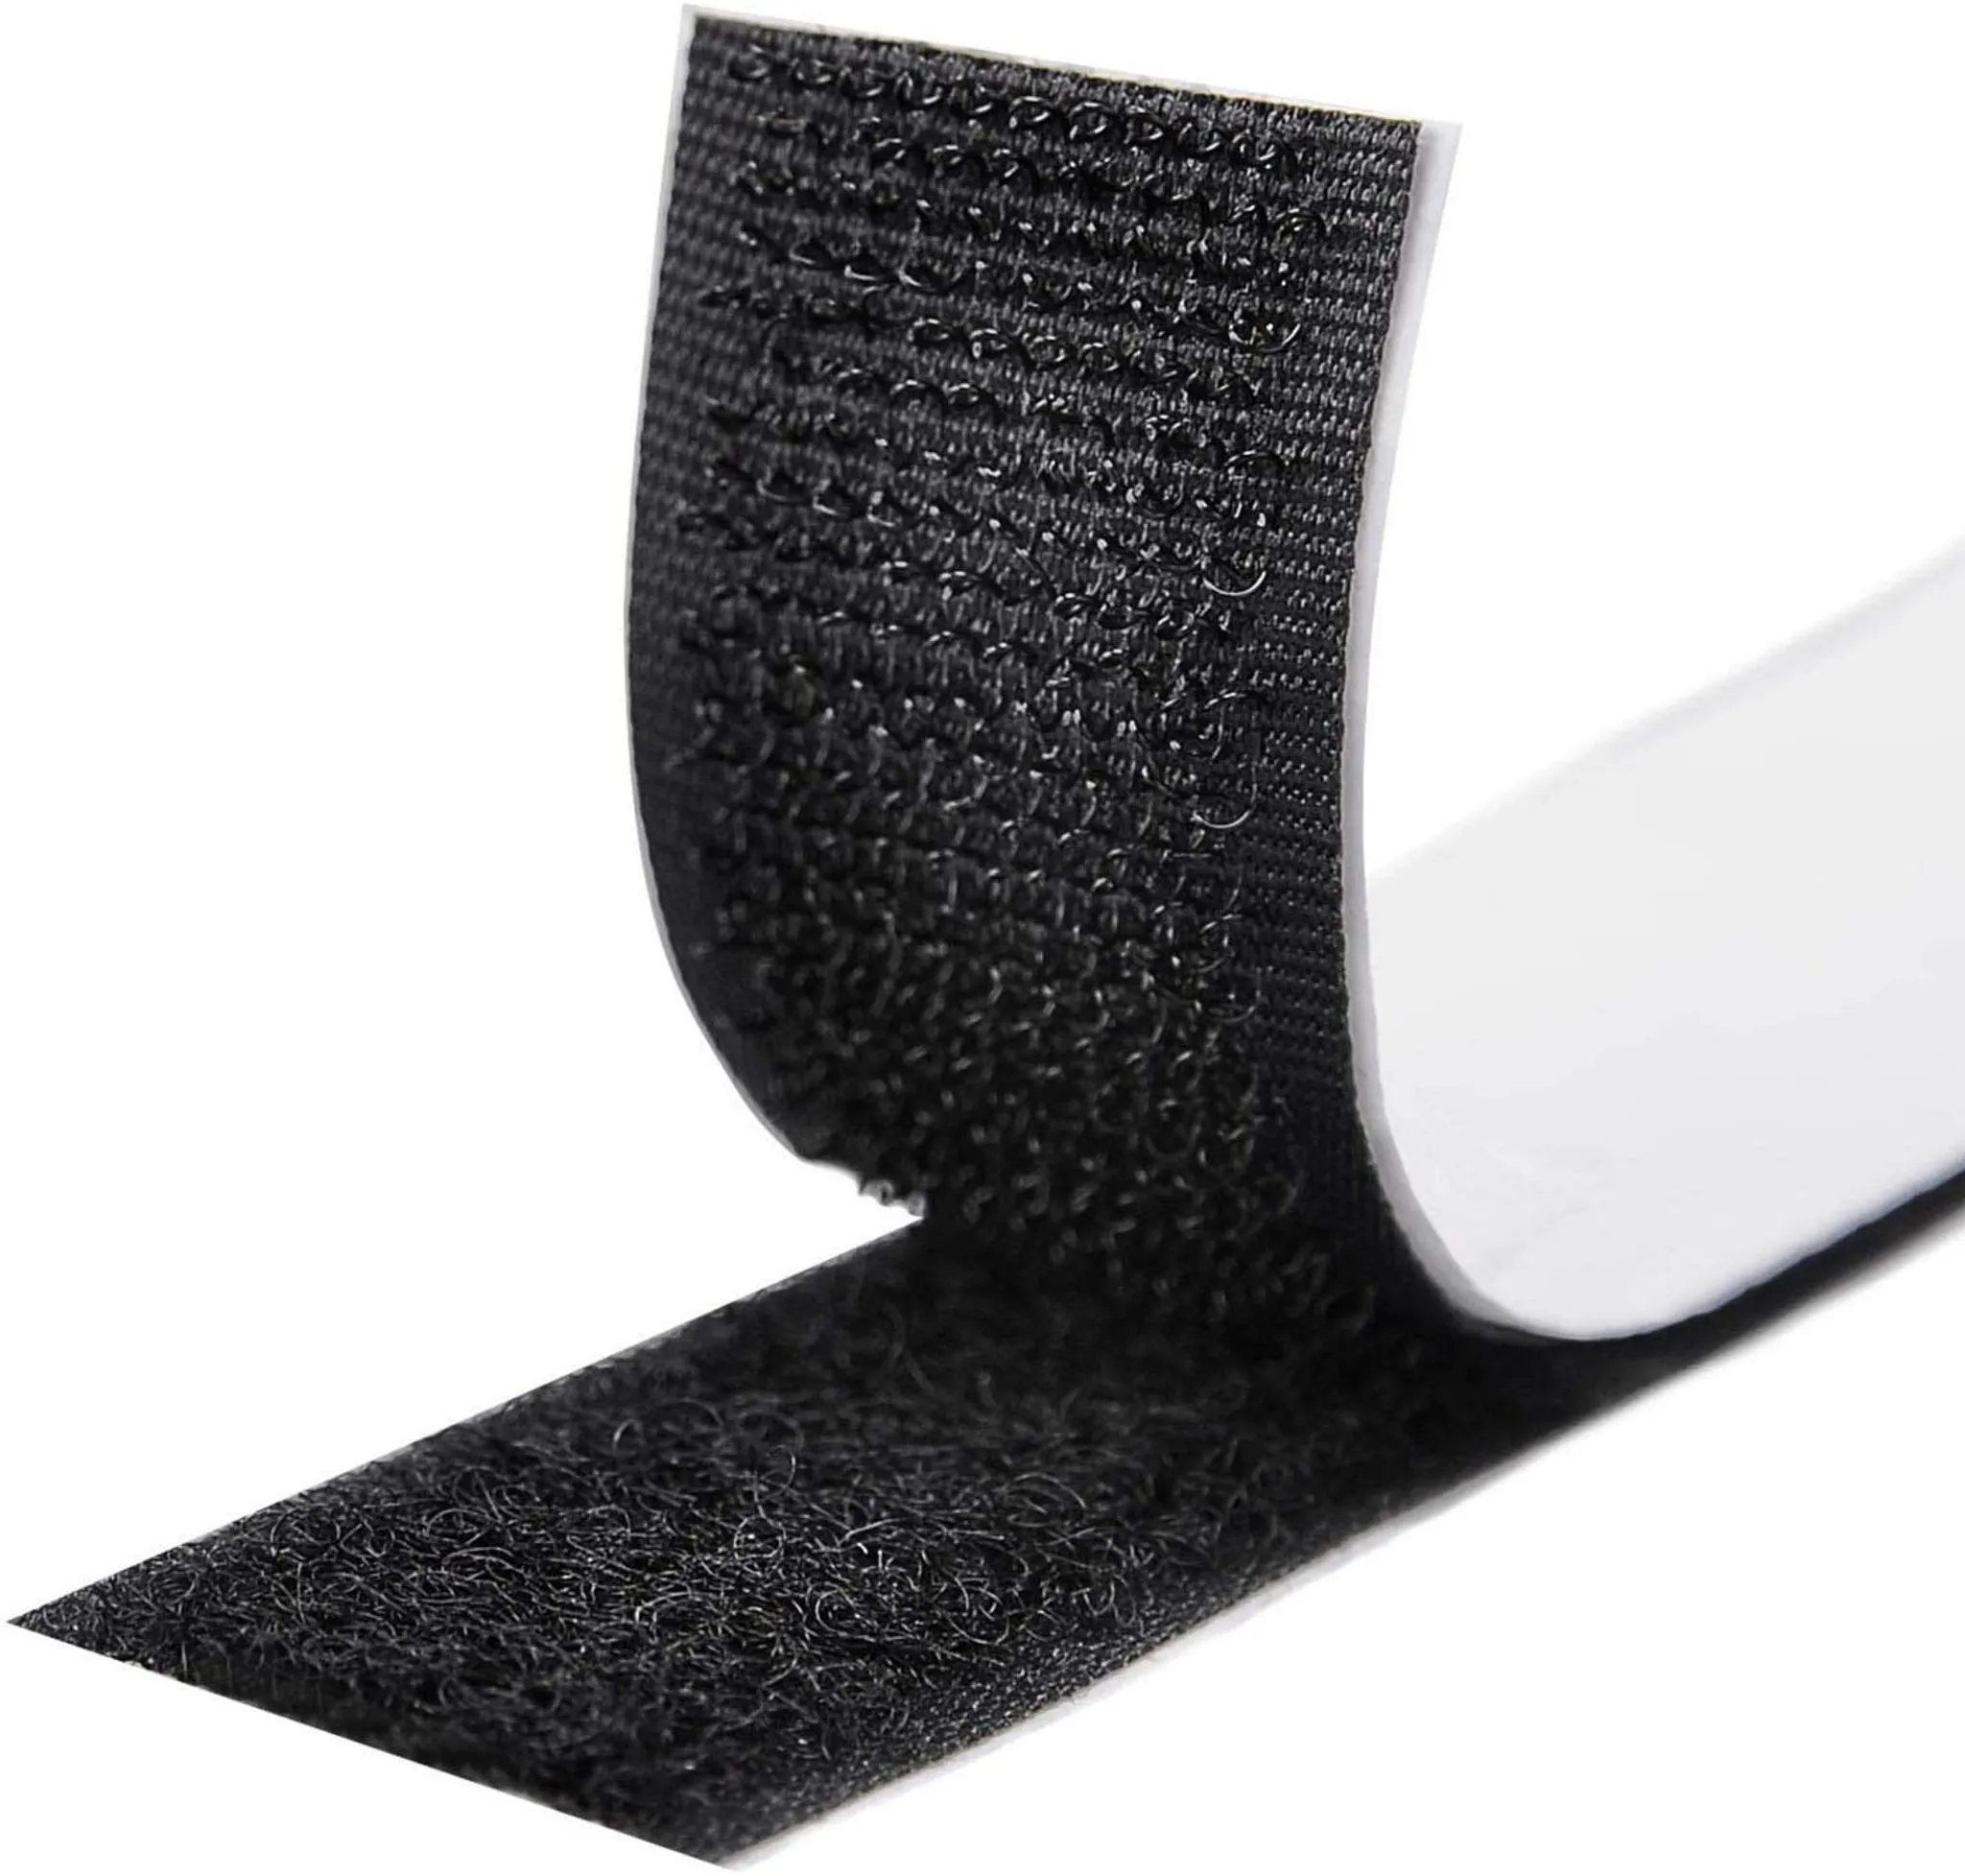 5m Rolle Flausch KRNSL5 schwarz 20mm breit FrogJim 5m Flauschband Klettband zum Nähen nicht selbstklebend/nähen, Flauschband schwarz 